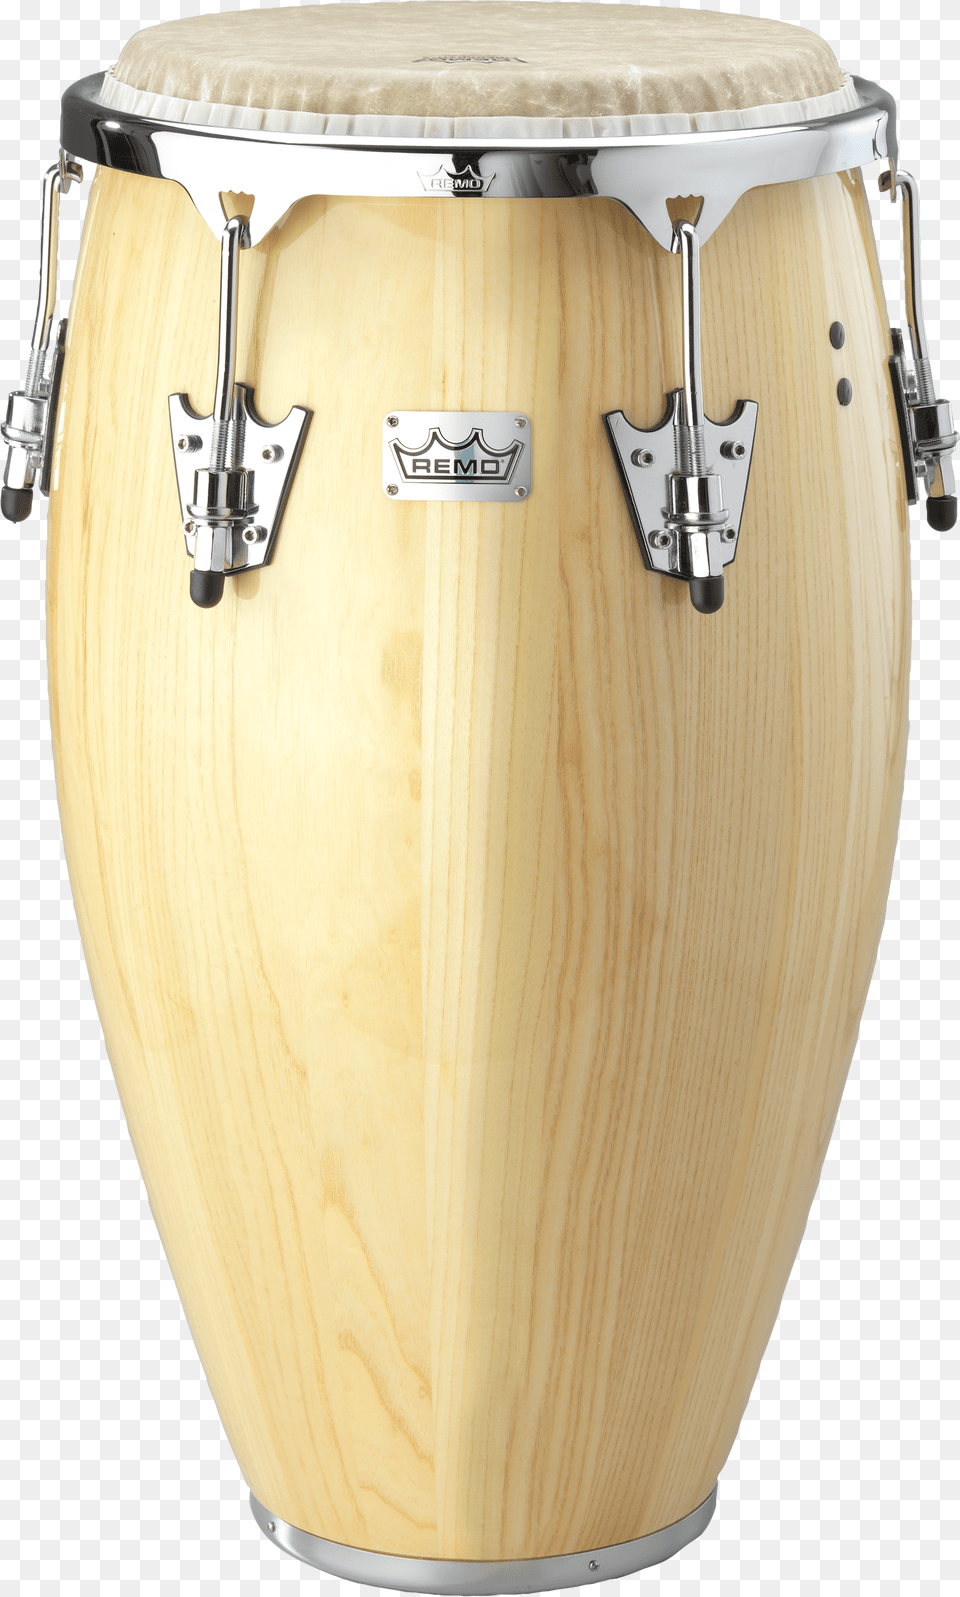 Remo Crown Percussion Conga Drum Natural Remo Crown Percussion Congas, Musical Instrument Png Image